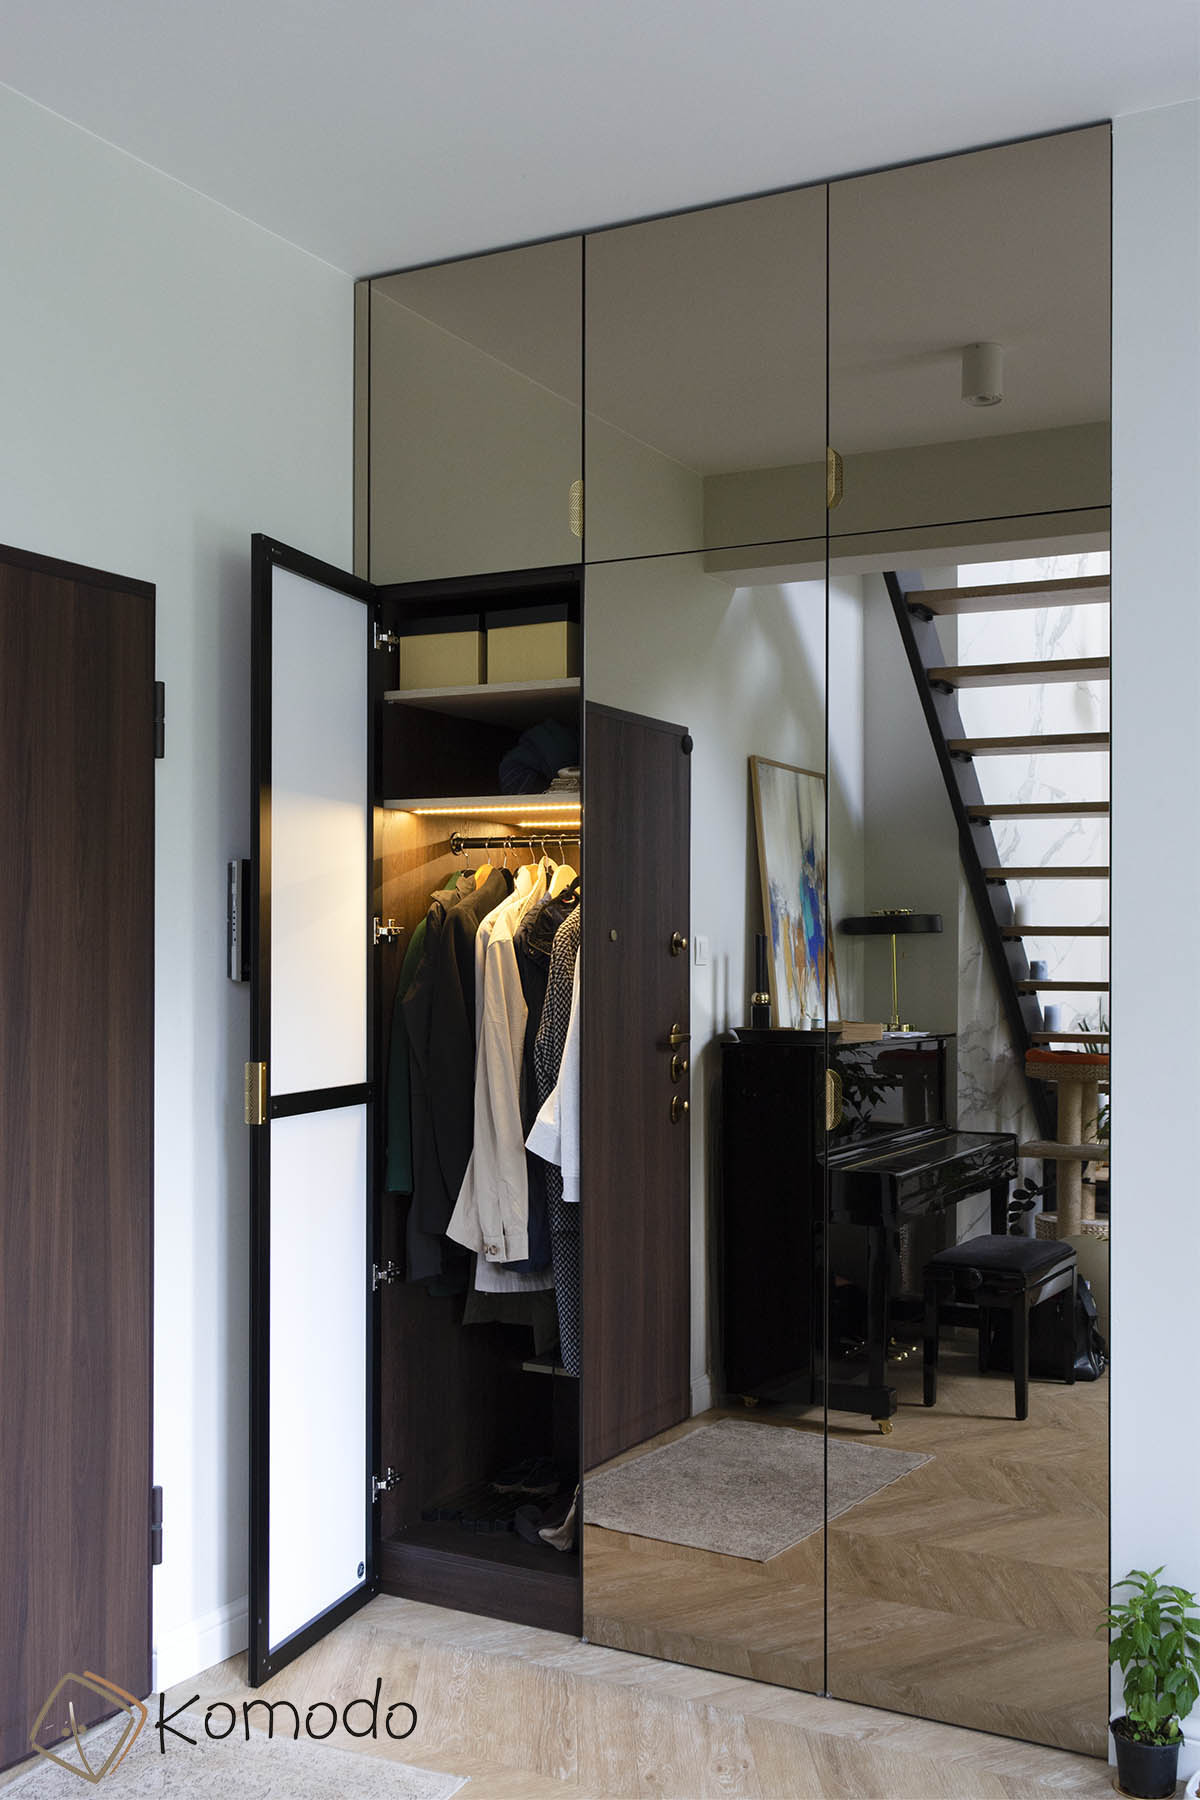 Szafa z drzwiami otwieranymi lustra brązowe, lustrzana szafa - zdjęcie 1